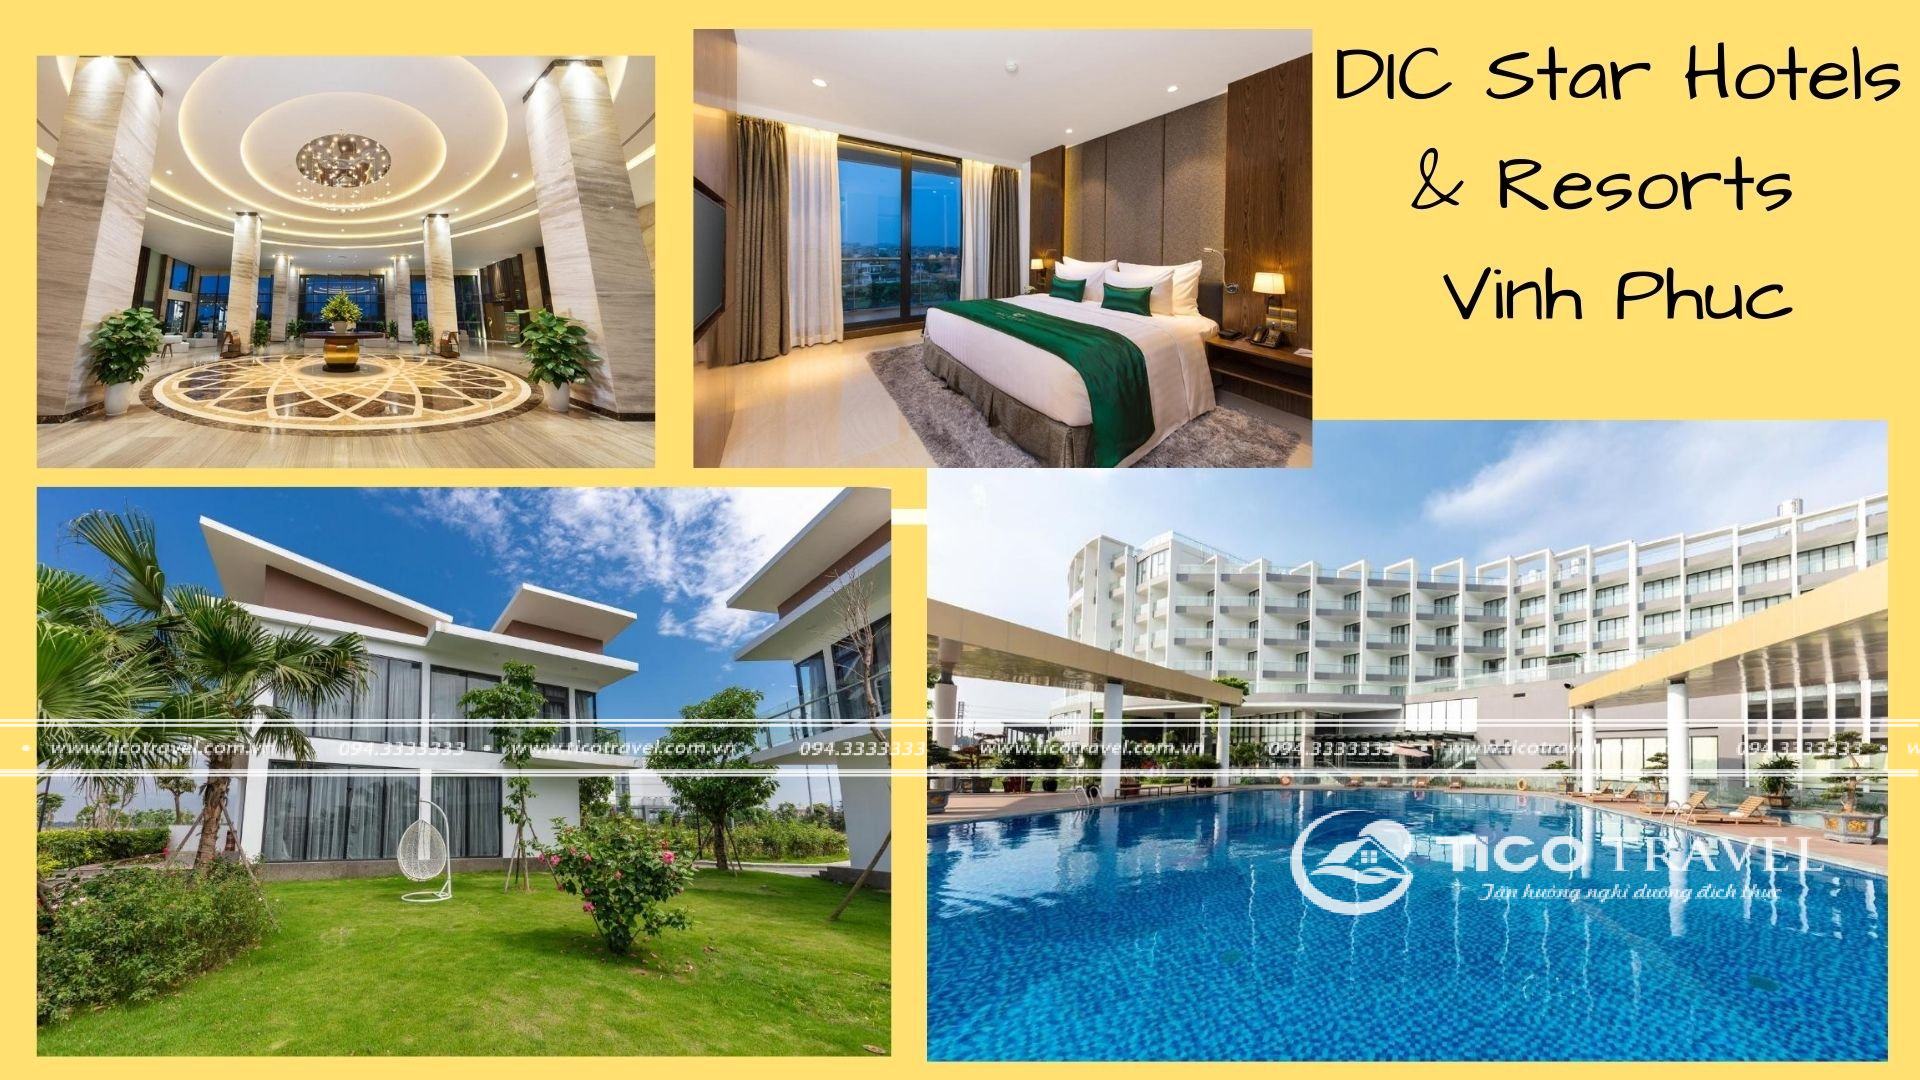 Ảnh chụp toàn cảnh tạib DIC Star Hotels & Resorts Vinh Phuc